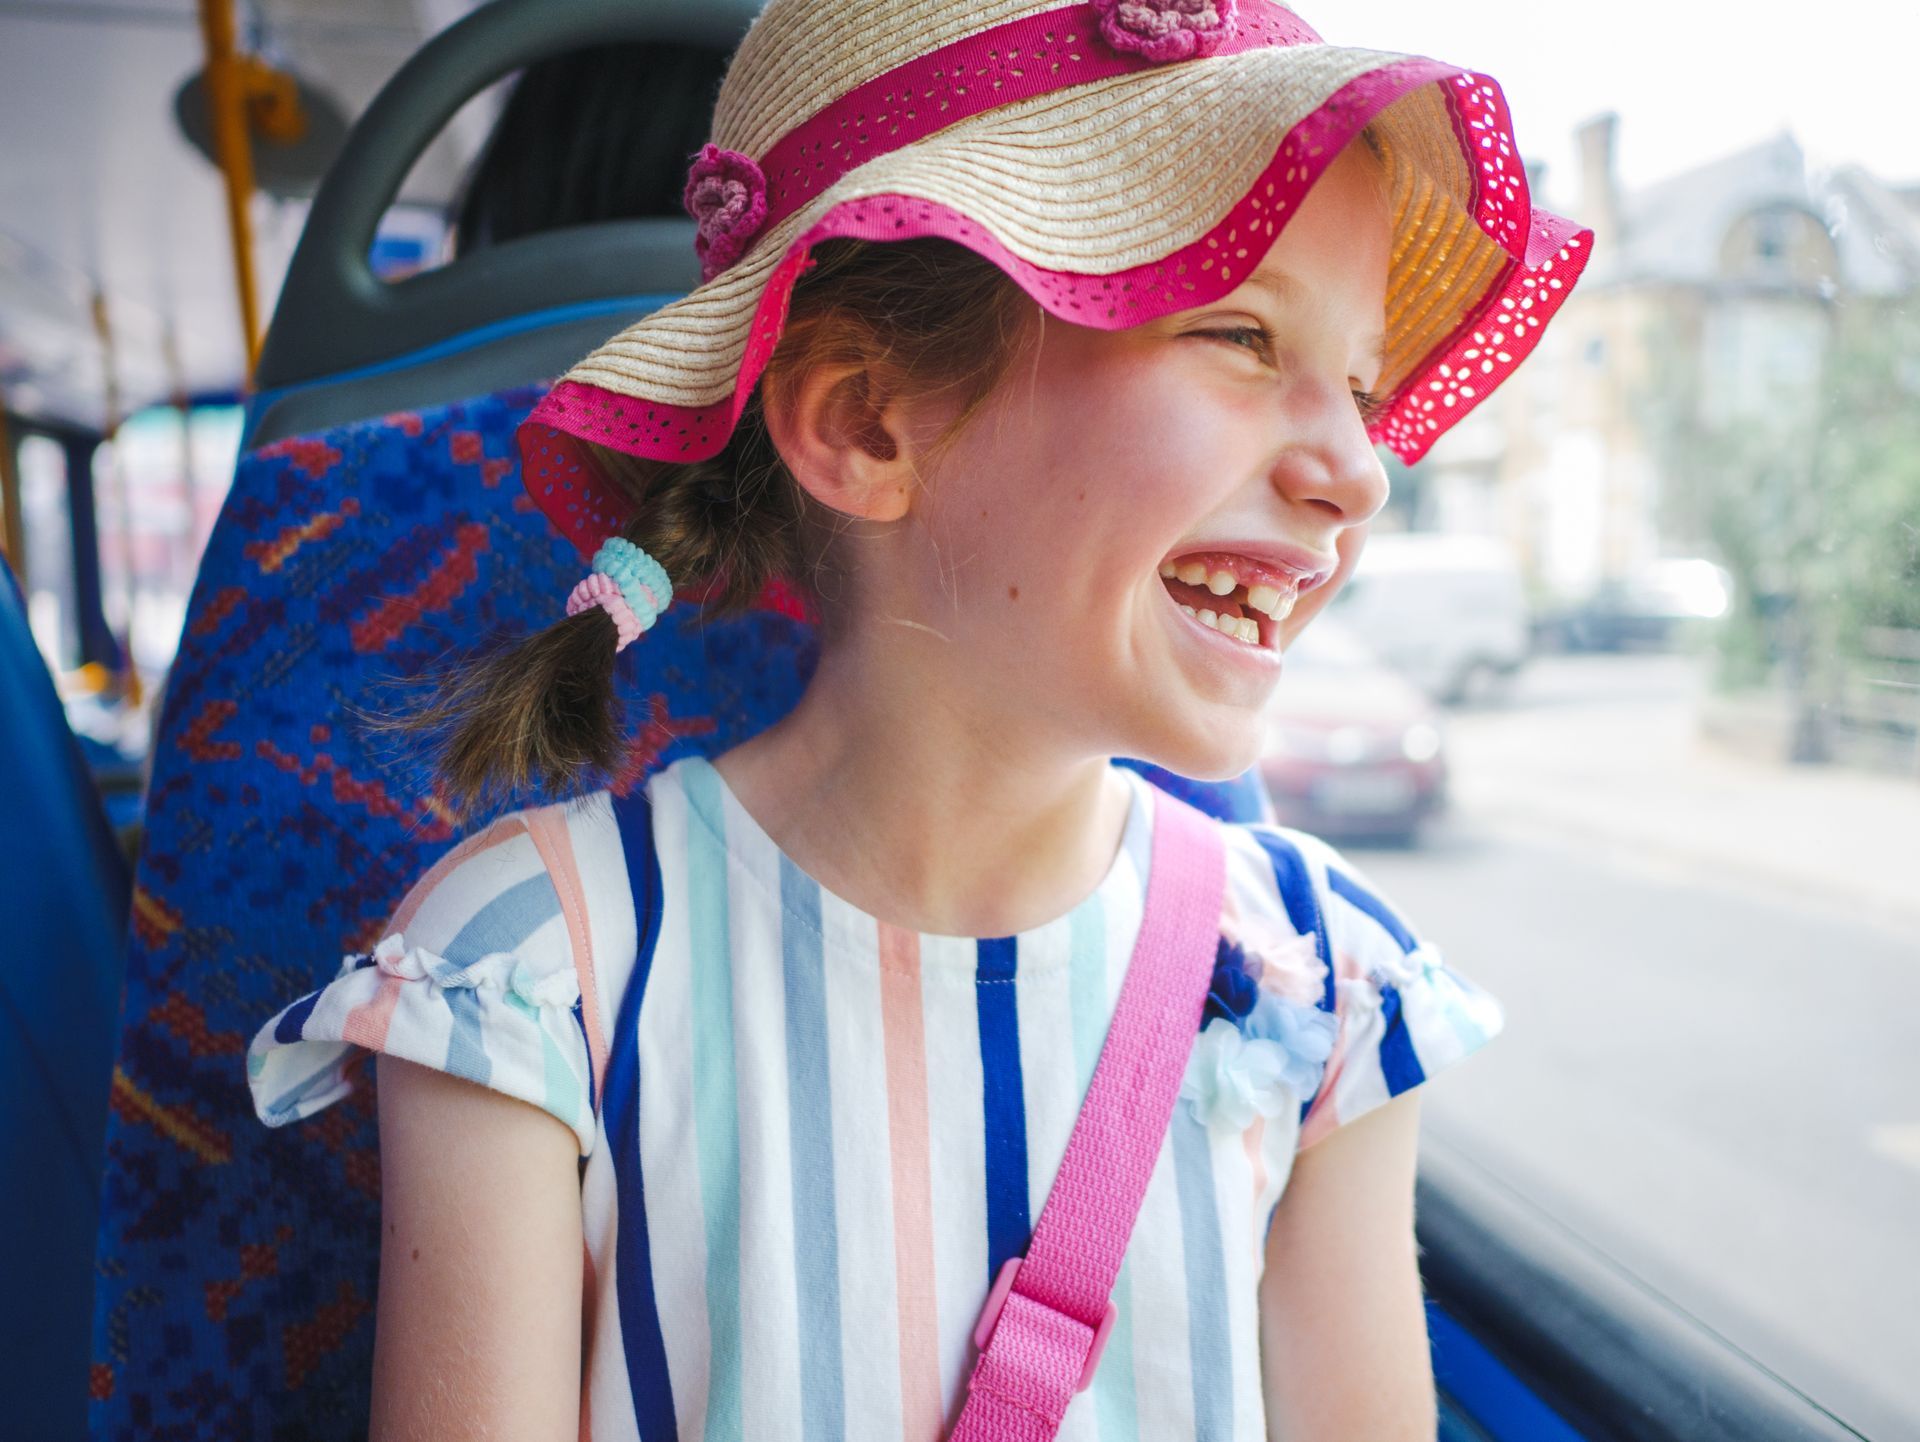 Jeune fille souriante dans un bus